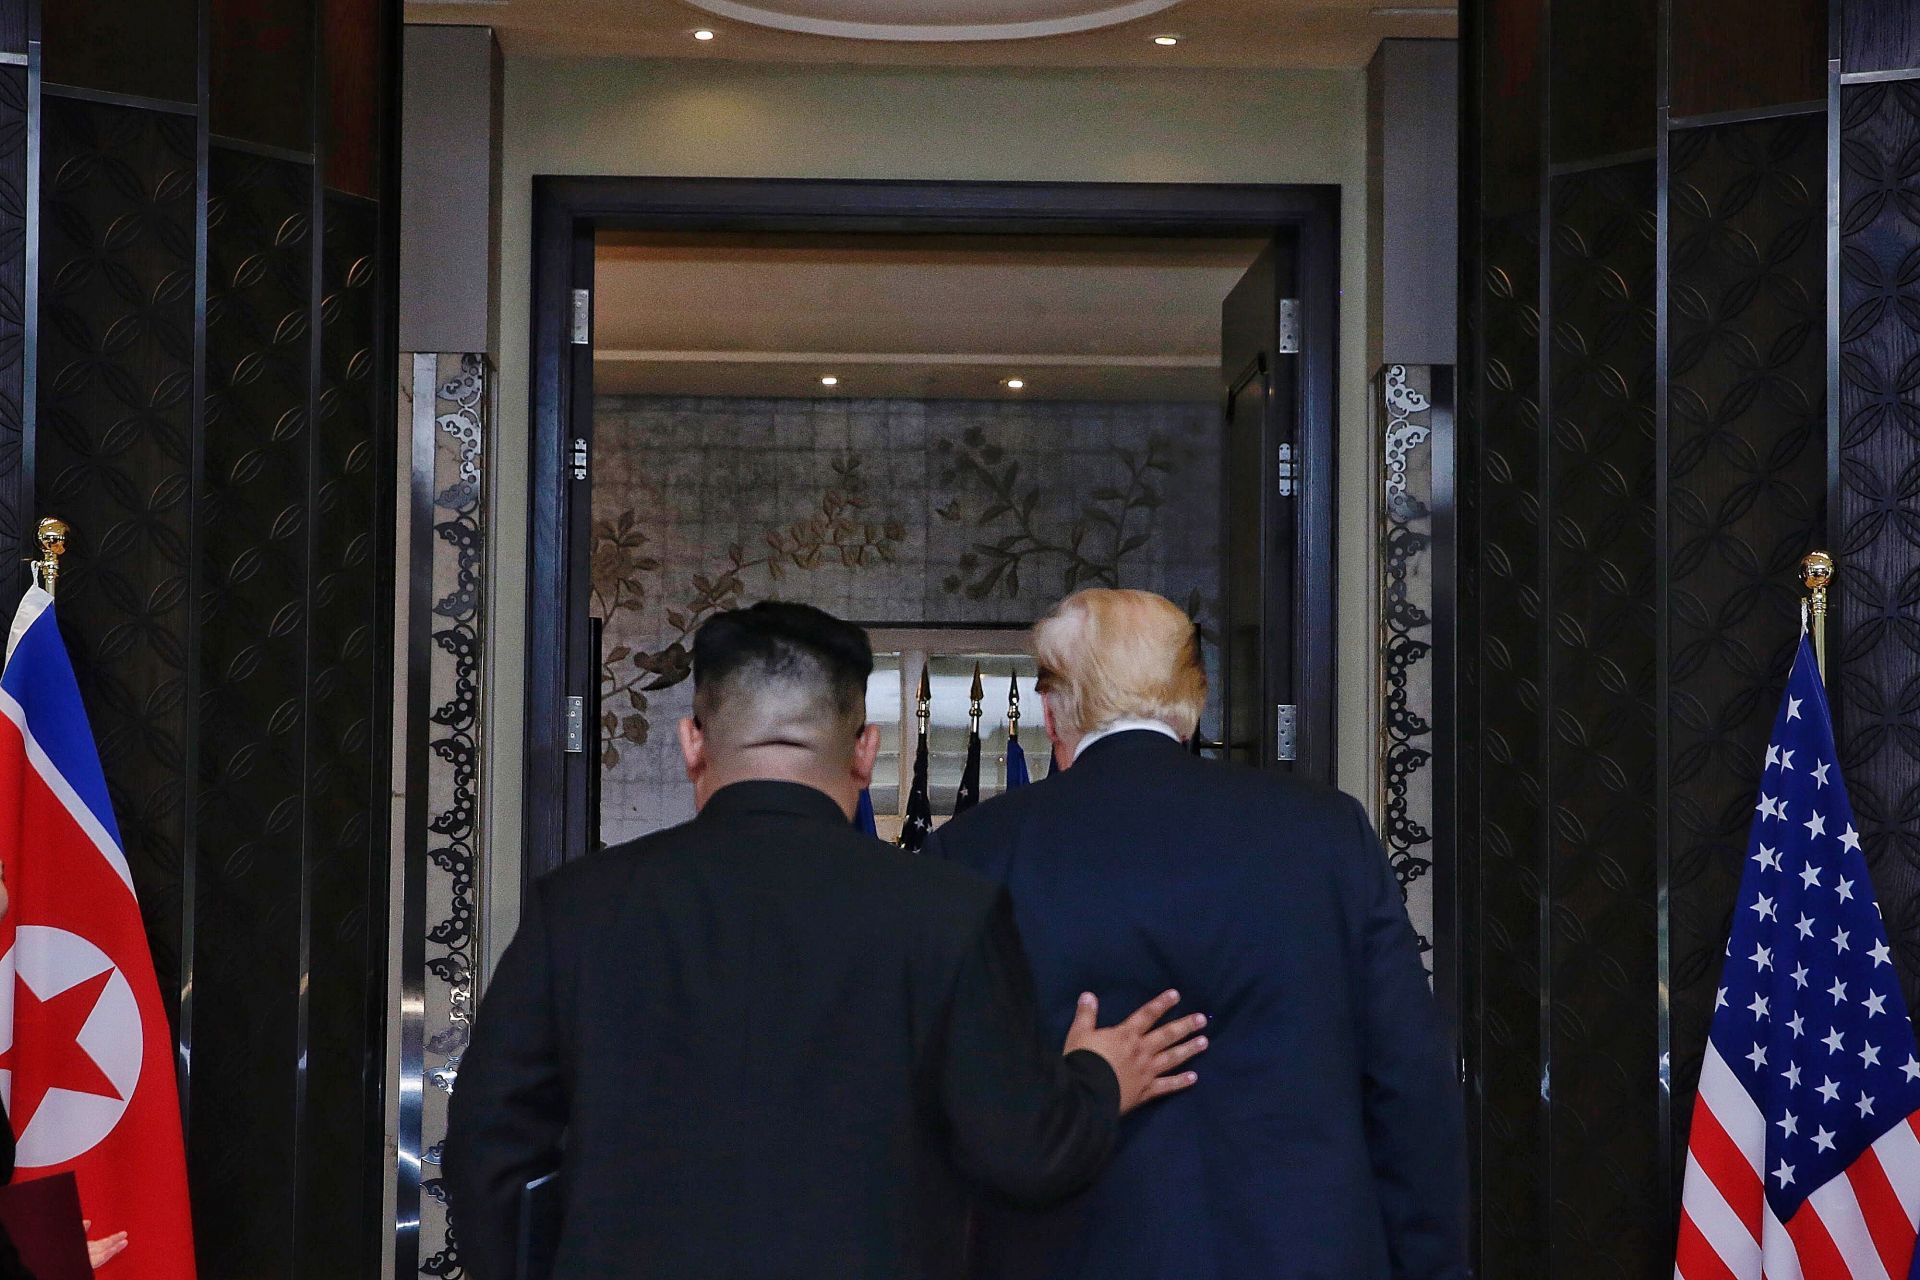  El presidente estadounidense, Donald J. Trump (d), y el líder norcoreano, Kim Jong-un, abandonan juntos la sala tras asistir a la ceremonia de firma de una declaración conjunta 